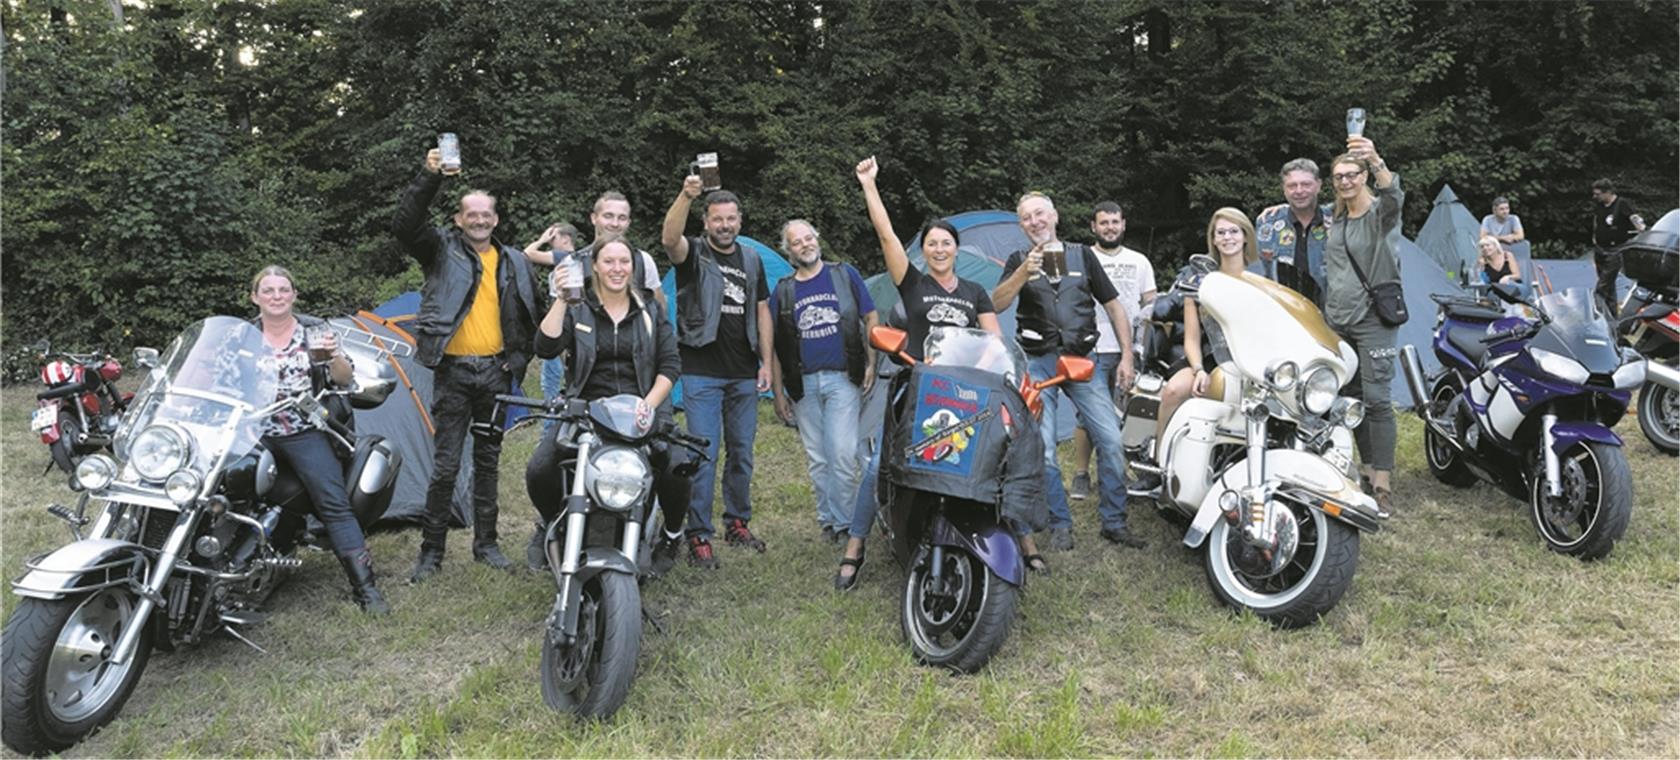 Die Gäste vom Motorradclub Bernried sind aus der Nähe von Deggendorf in Niederbayern bis ins schwäbische Spiegelberg gefahren – extra für’s letzte Treffen des MSC Spiegelberg.Foto: J. Fiedler